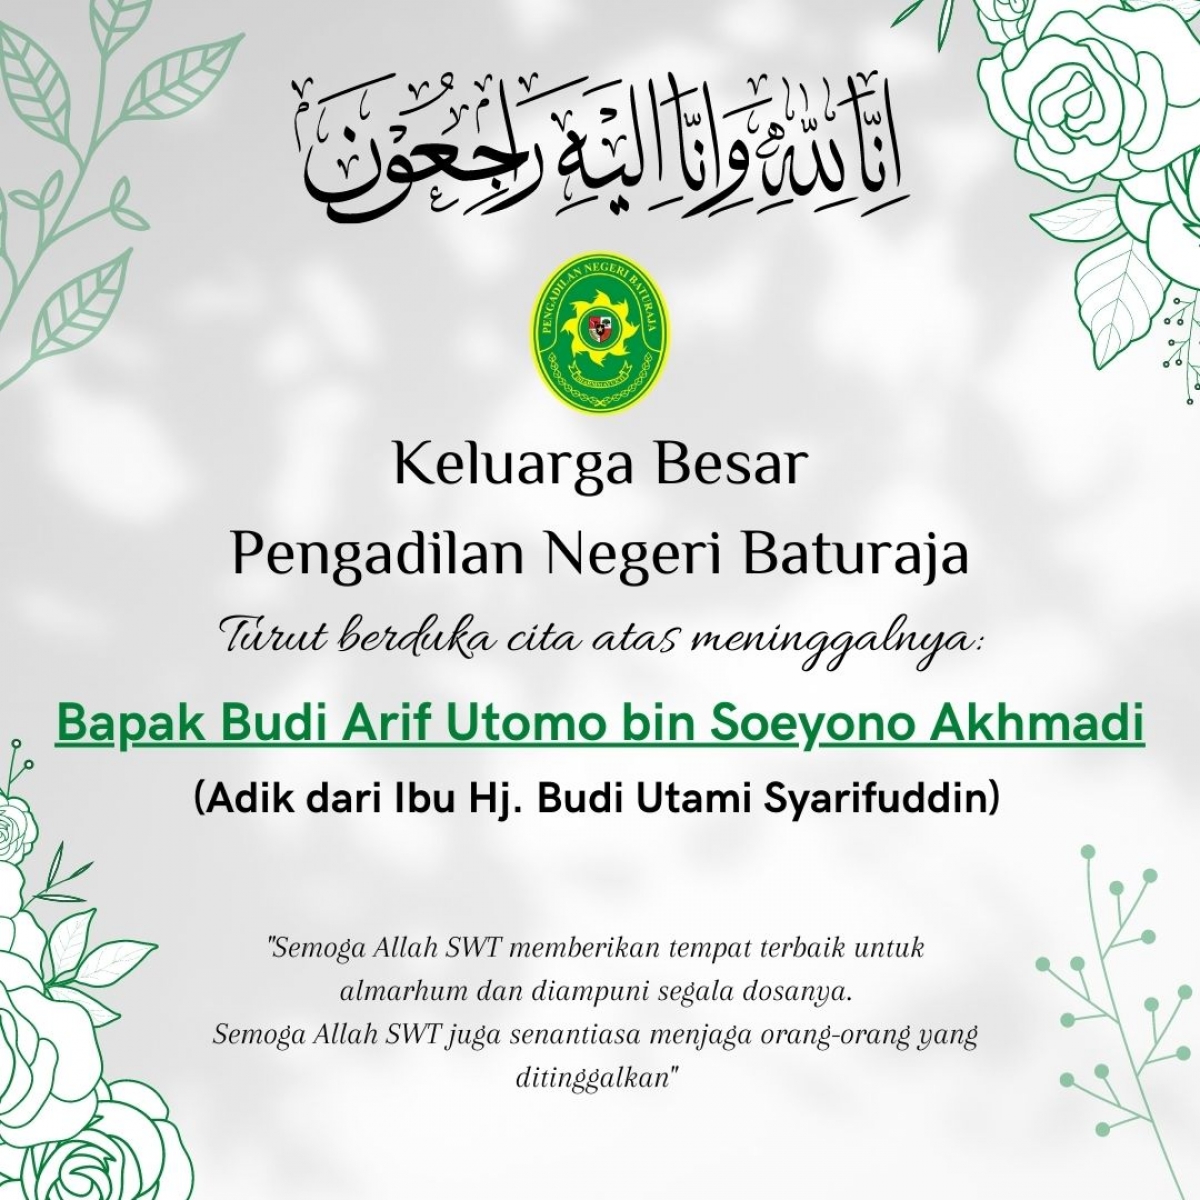 Keluarga Besar Pengadilan Negeri Baturaja turut berduka cita atas meninggalnya Bapak Budi Arif Utomo bin Soeyono Akhmadi